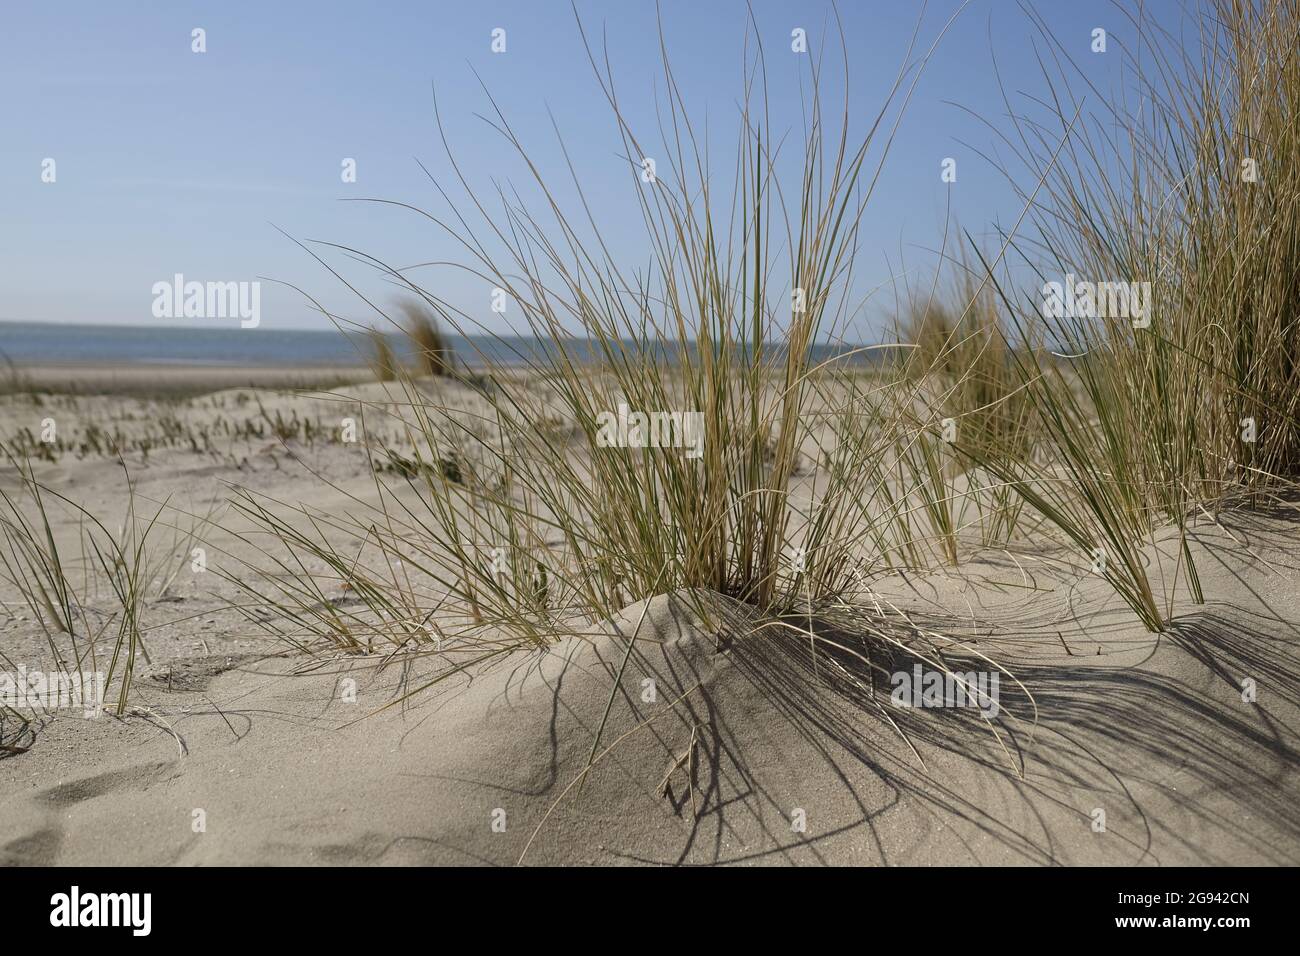 Dunes avec herbe de maram avec vue sur la mer. La photo est prise près de la plage de Rockanje dans le sud-ouest de la Hollande. Magnifique avec des ombres à paupières Banque D'Images